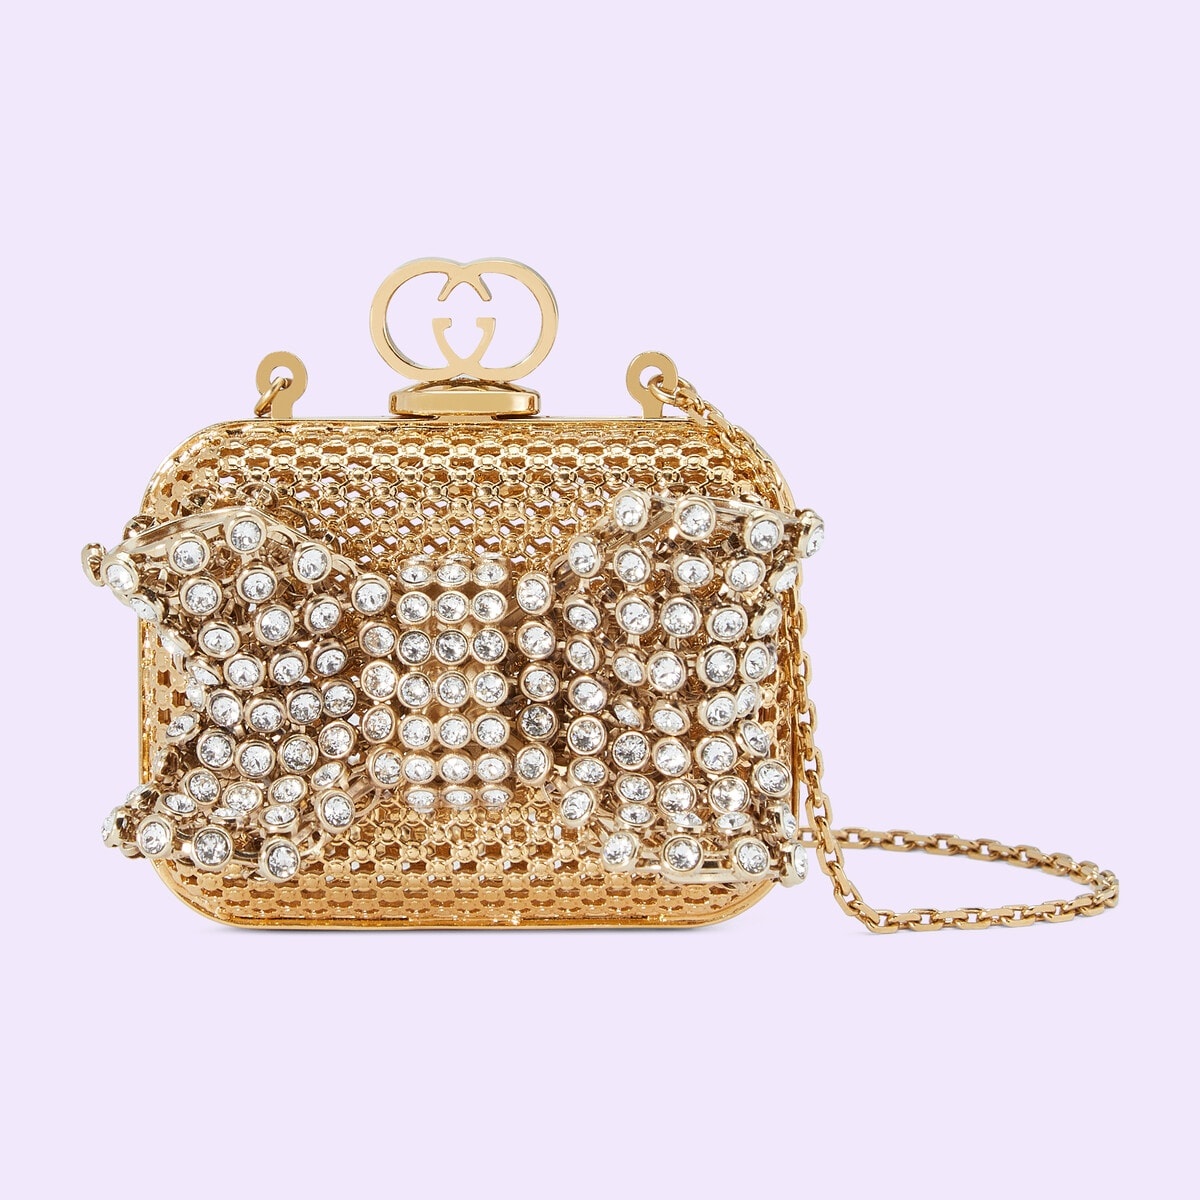 Metal mini handbag with crystal bow - 1